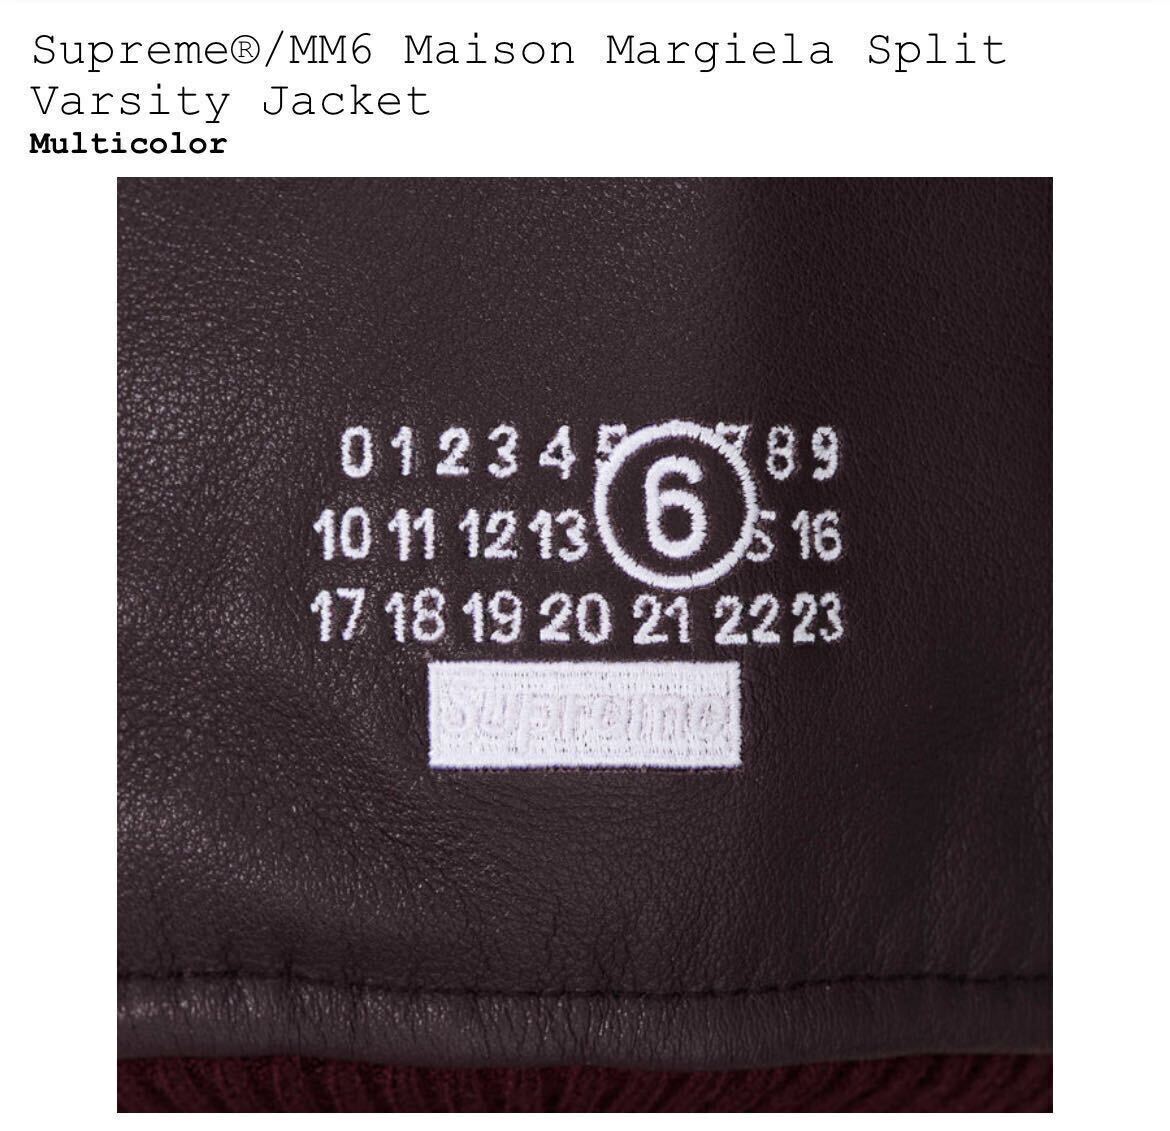 新品 Supreme MM6 Maison Margiela Split Varsity Jacket Large シュプリーム マルジェラ バーシティ ジャケット ポスター付 送料無料 即納の画像4